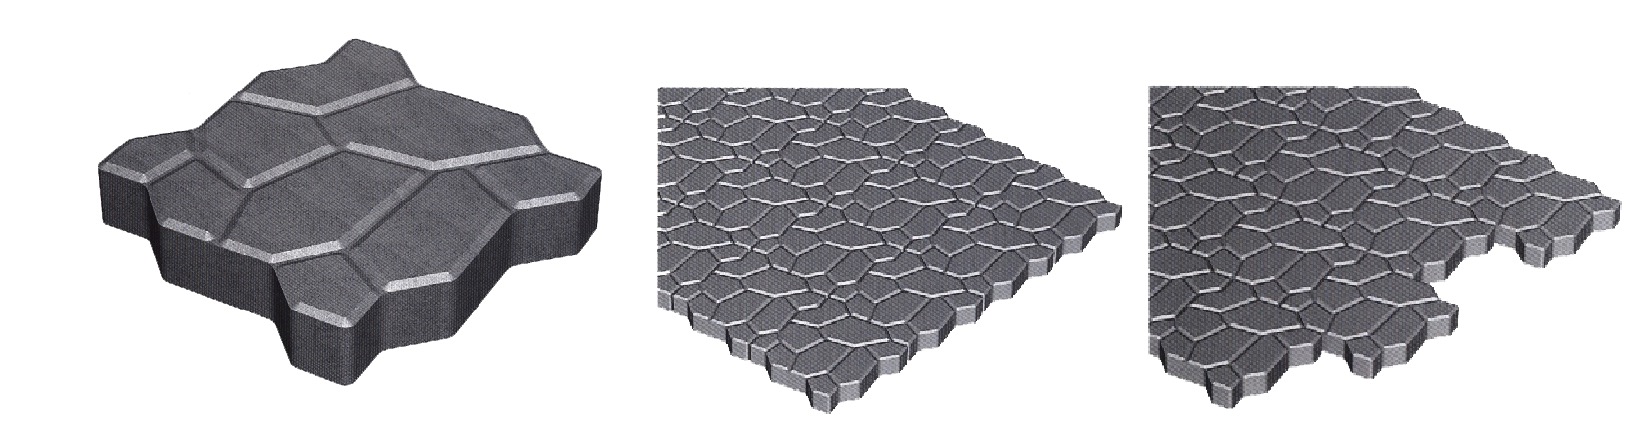 水立方形砖/斜视L型砖-德州恒石建材